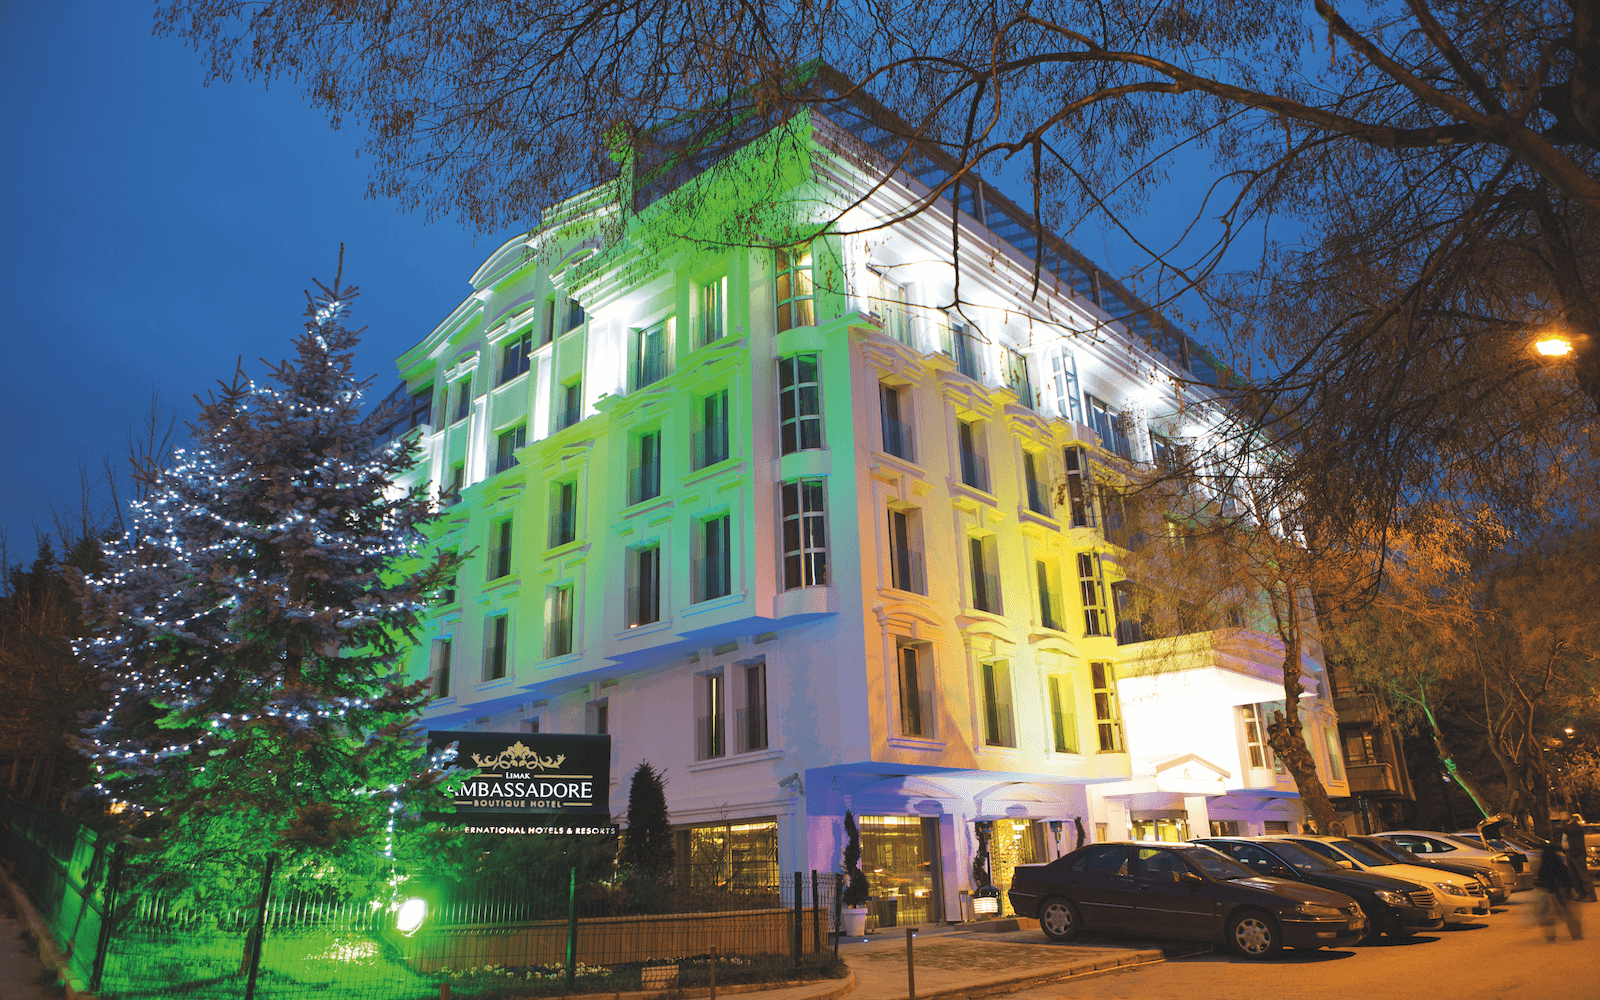 Limak Ambassodre Hotel